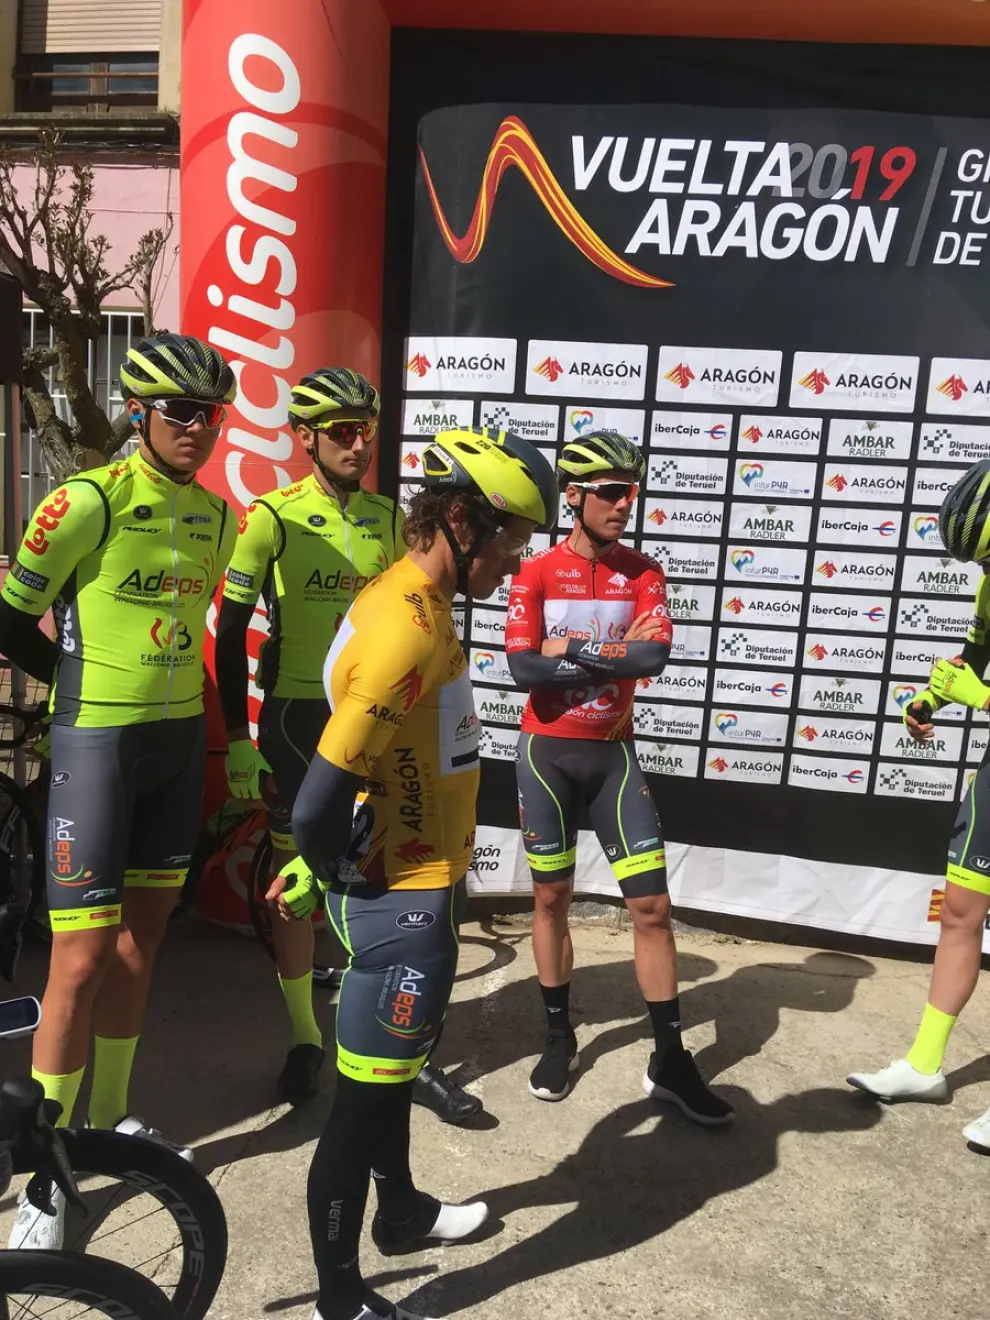 Wallonie-Bruxelles, equipo revelación en Calatayud con la victoria de etapa y los lideratos de general y sprints especiales. @Vuelta_Aragon